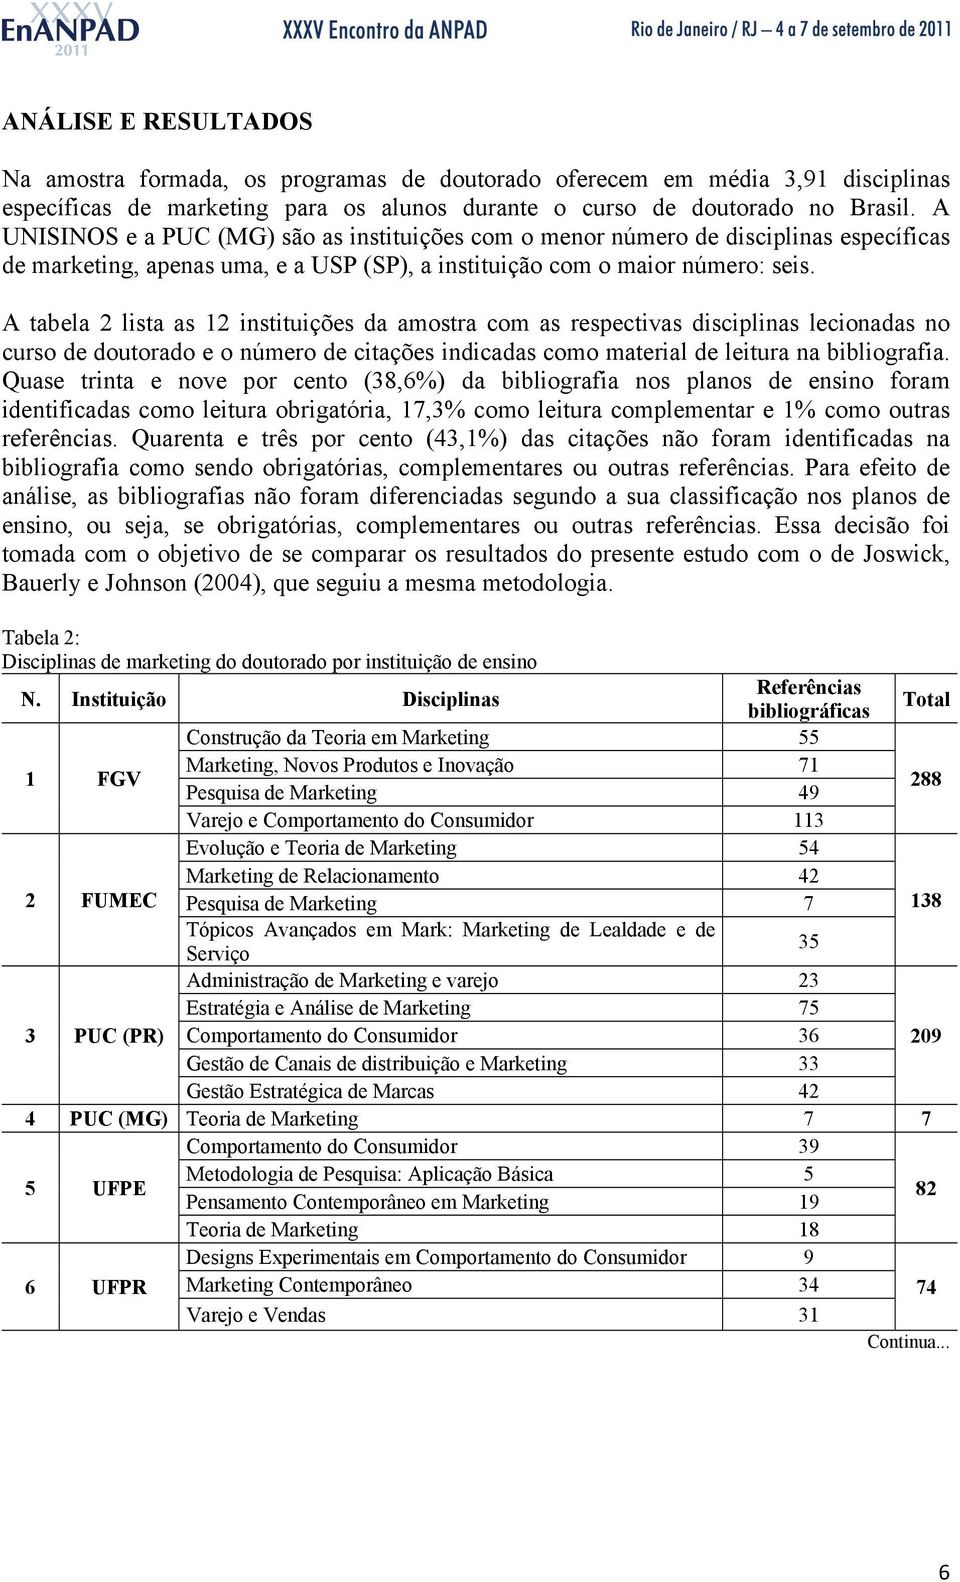 A tabela 2 lista as 12 instituições da amostra com as respectivas disciplinas lecionadas no curso de doutorado e o número de citações indicadas como material de leitura na bibliografia.